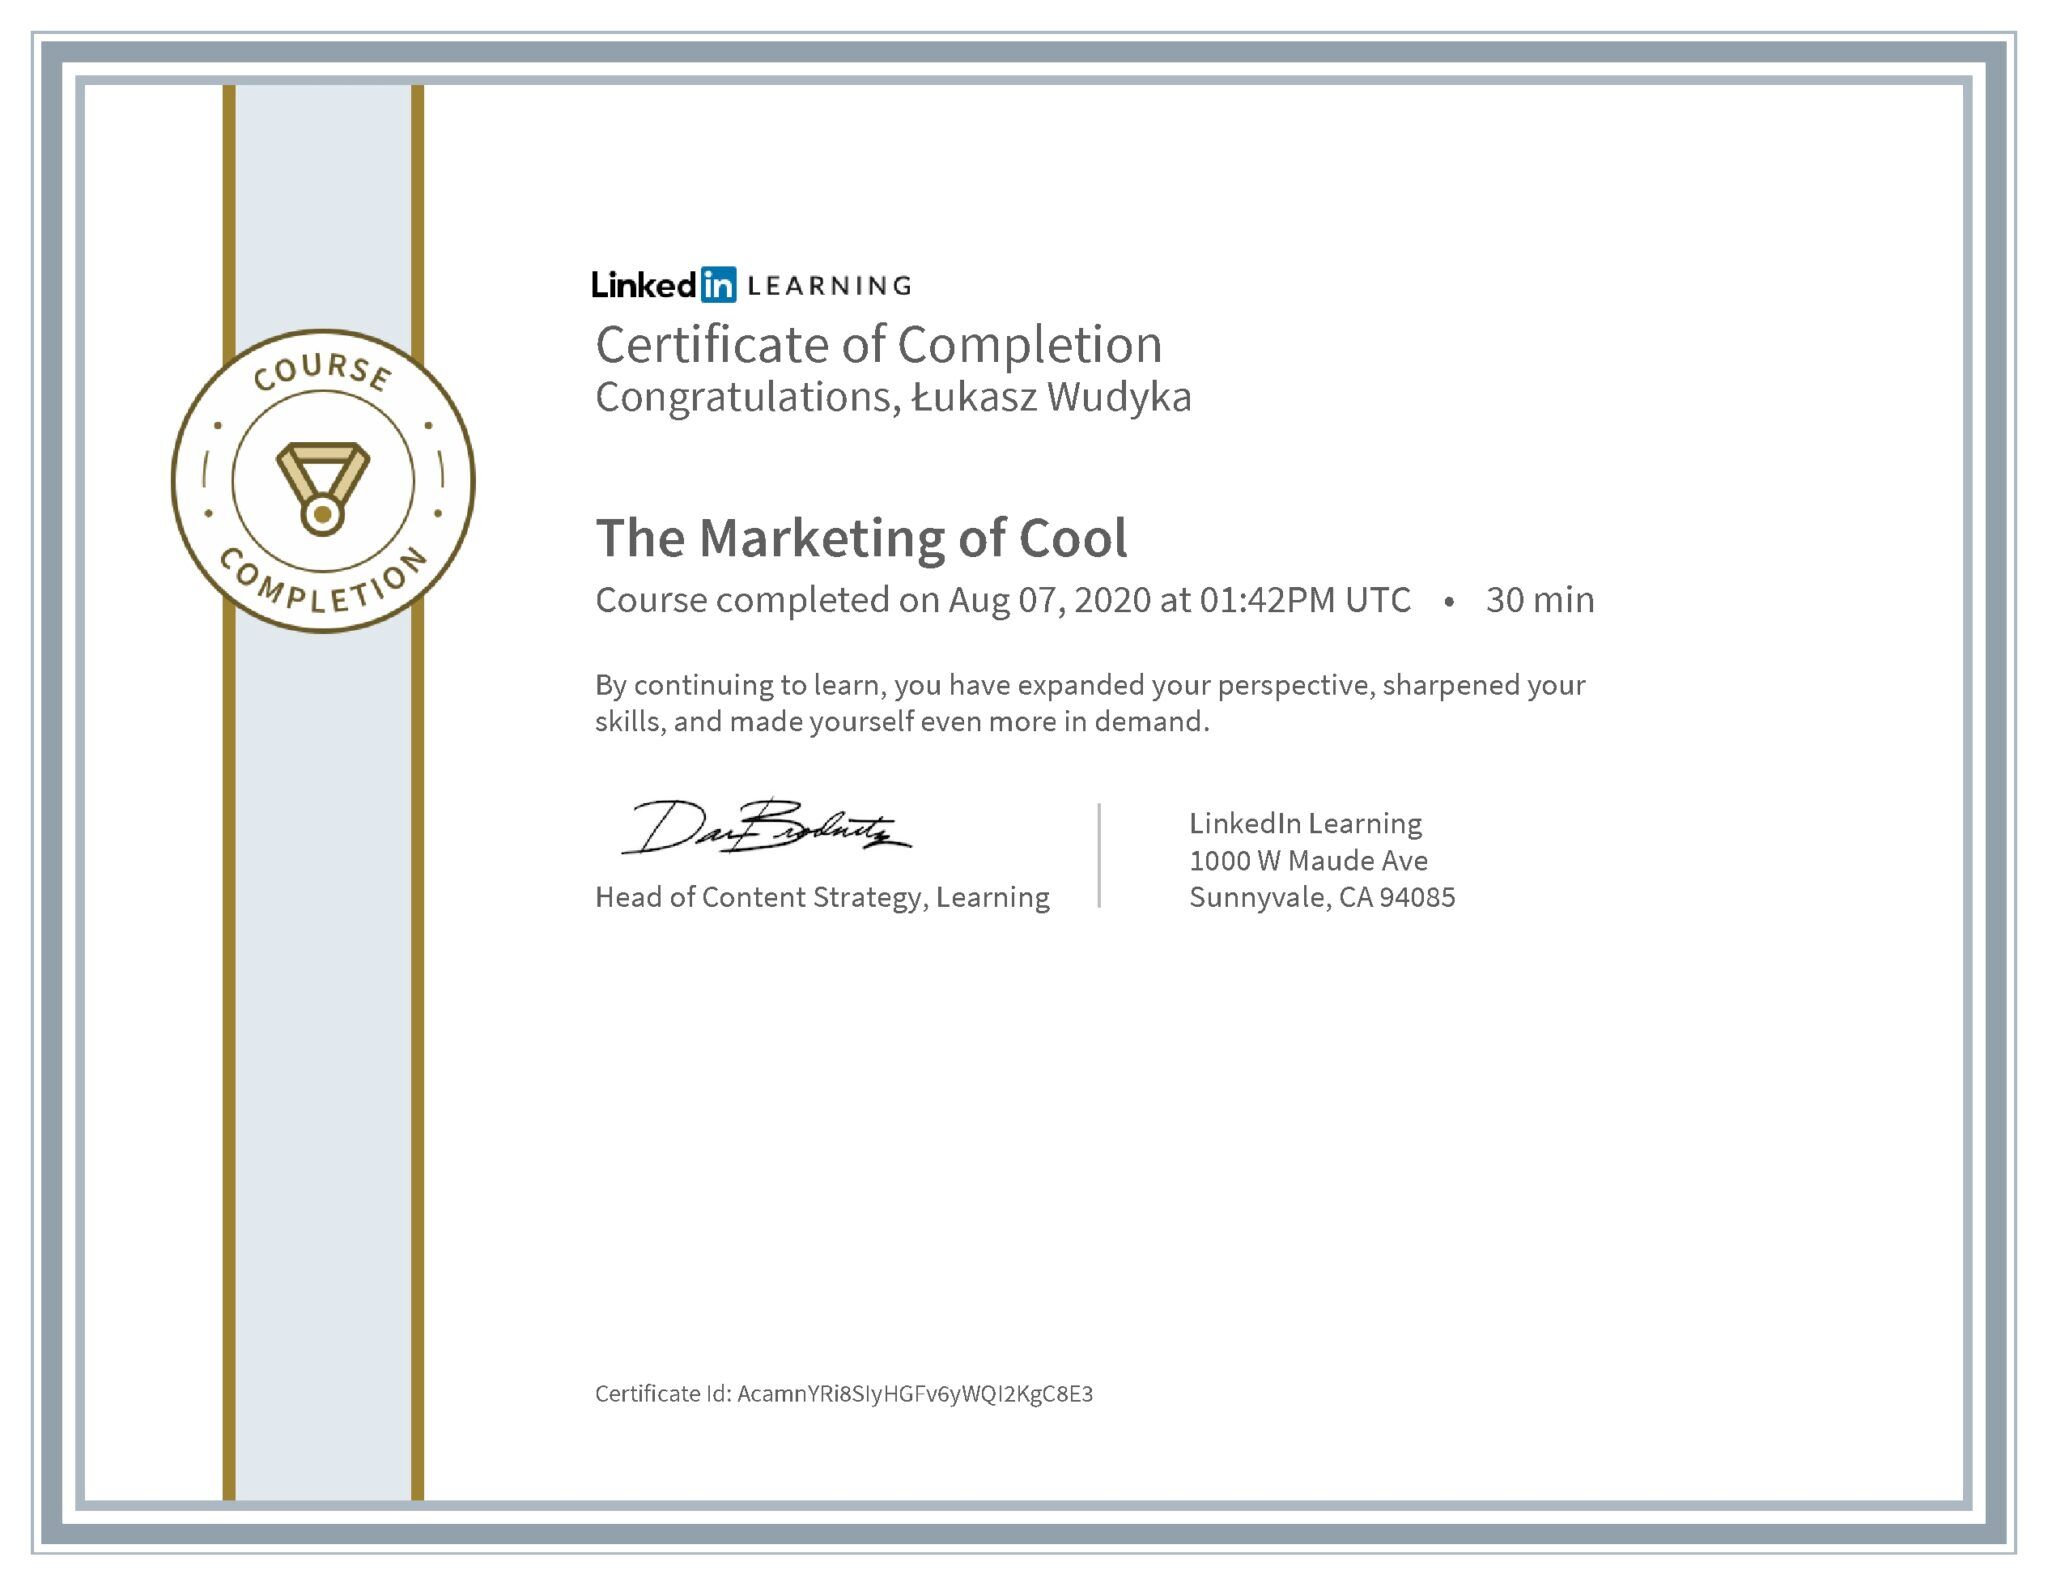 Łukasz Wudyka certyfikat LinkedIn The Marketing of Cool